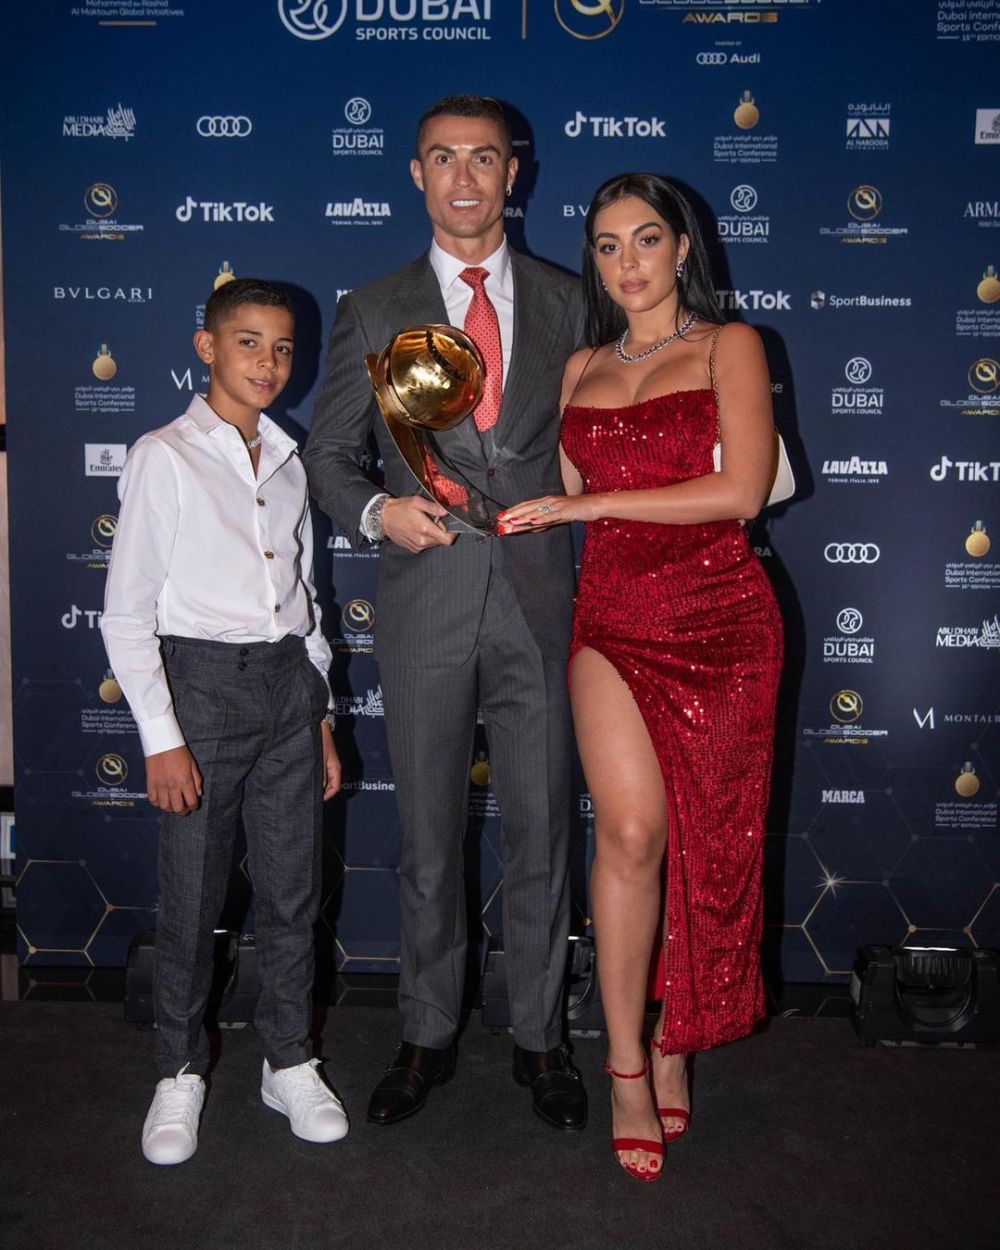 Ceasul lui Cristiano Ronaldo despre care vorbeste toata planeta! Bijuteria de 1.5 milioane de euro cu care a mers la gala Globe Soccer Awards_4